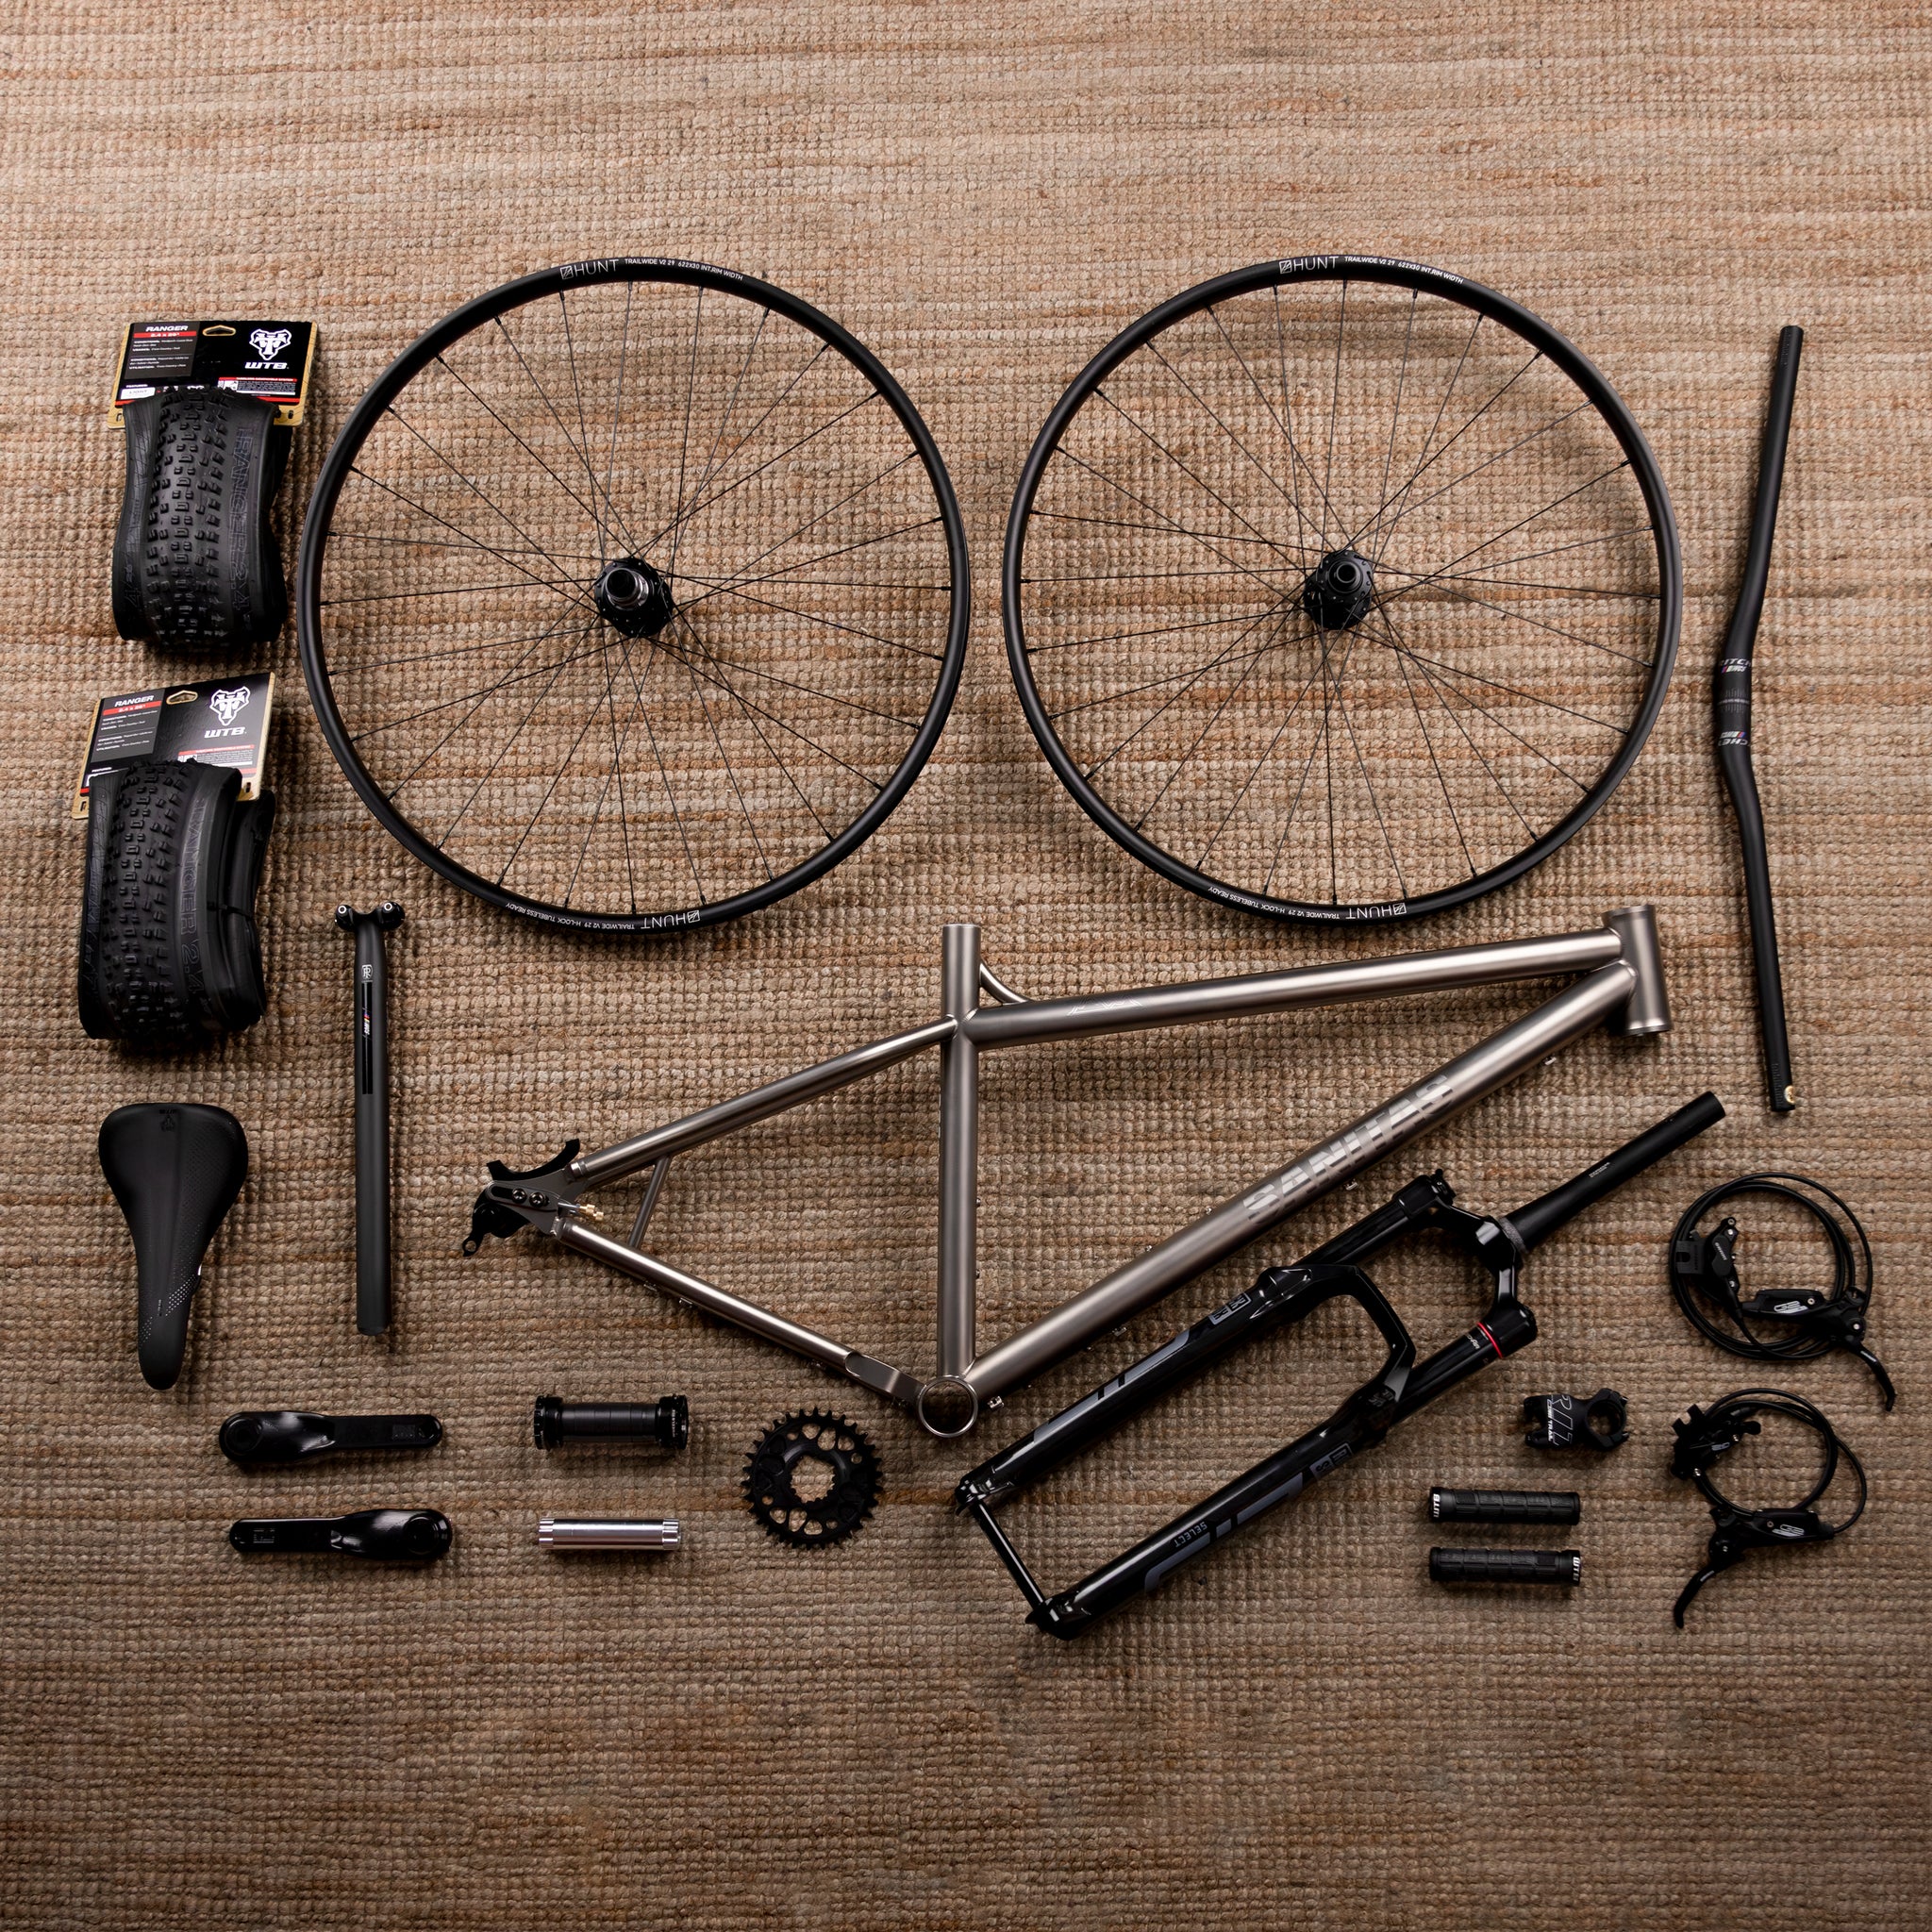 Sanitas bike giveaway bike build